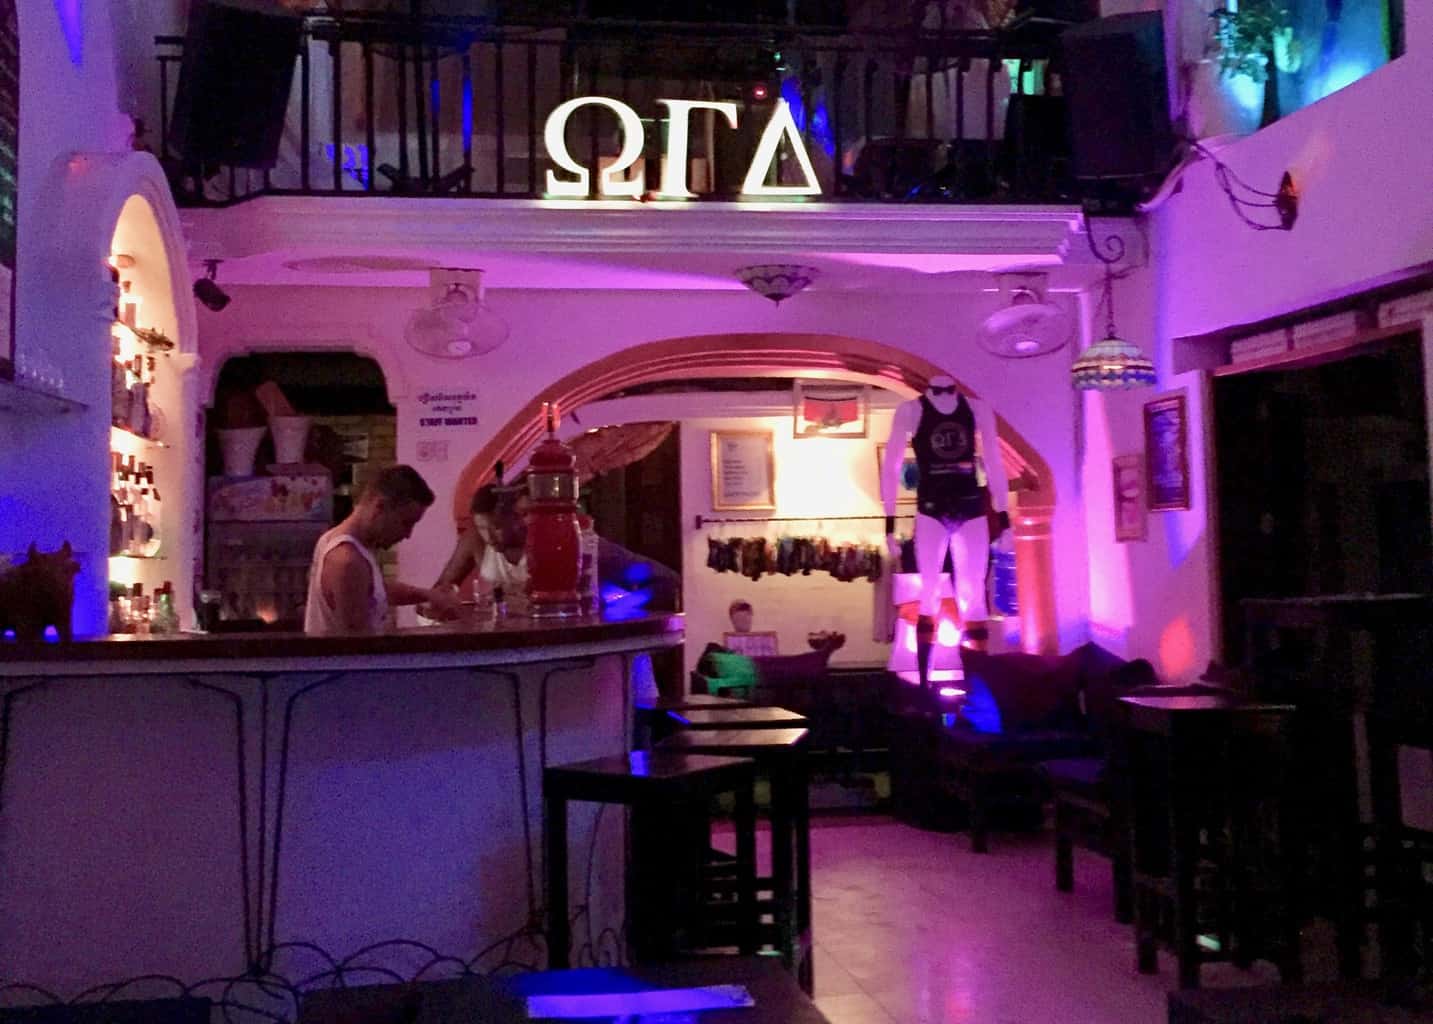 OGA Bar - LUKKET